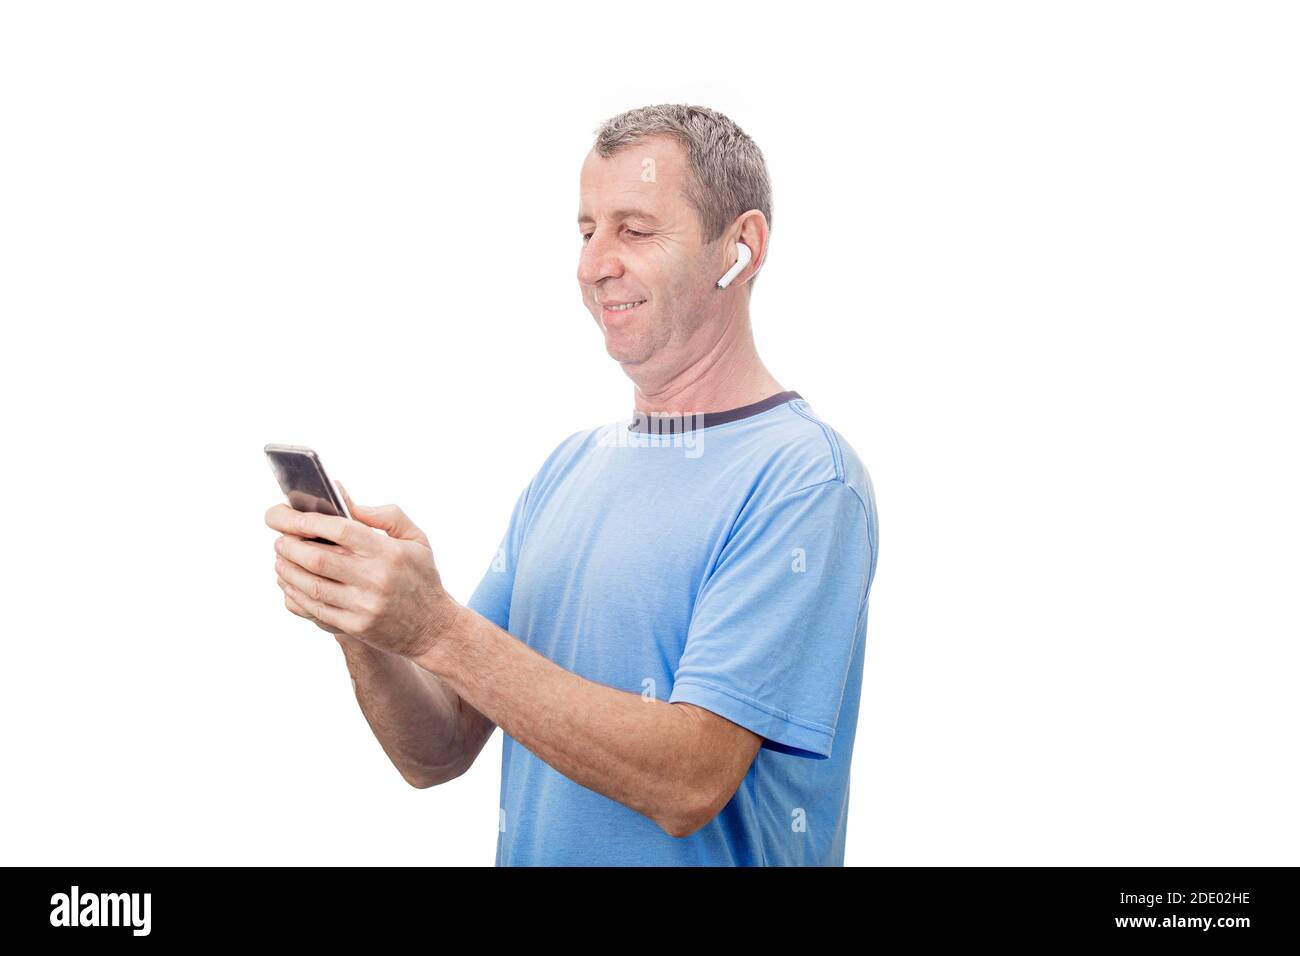 Lächelnder Mann mittleren Alters mit Smartphone und SMS, während Musik mit einem Ohrstöpsel hören. Stockfoto